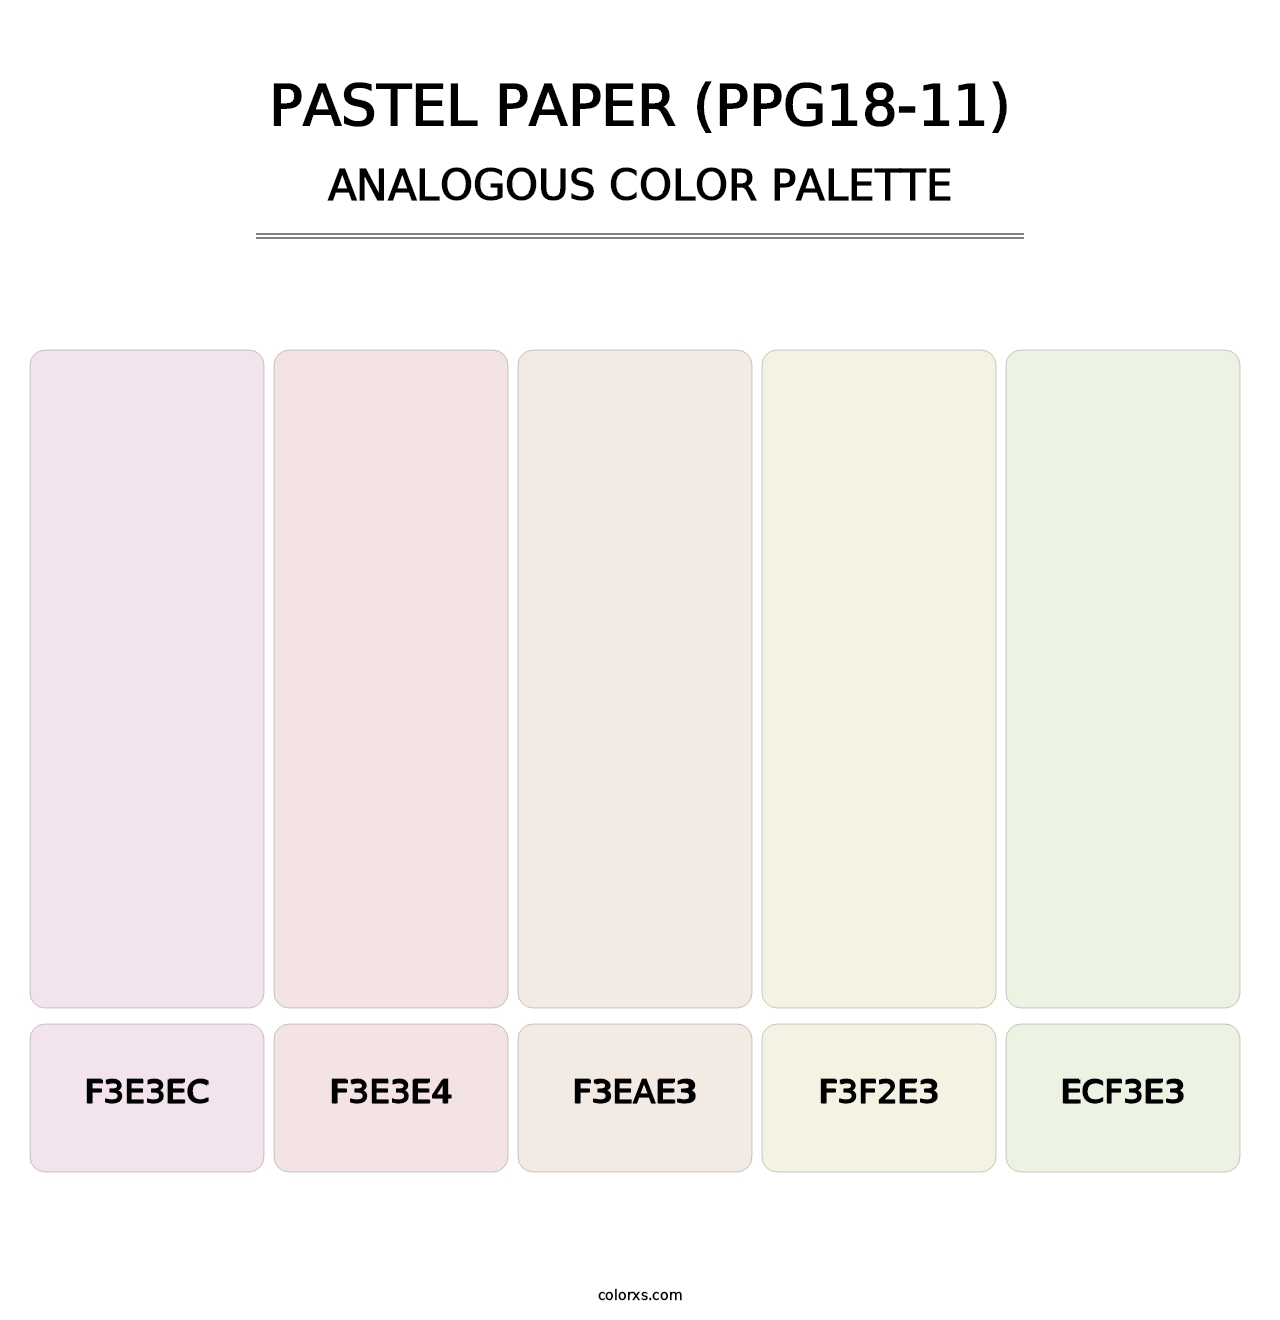 Pastel Paper (PPG18-11) - Analogous Color Palette